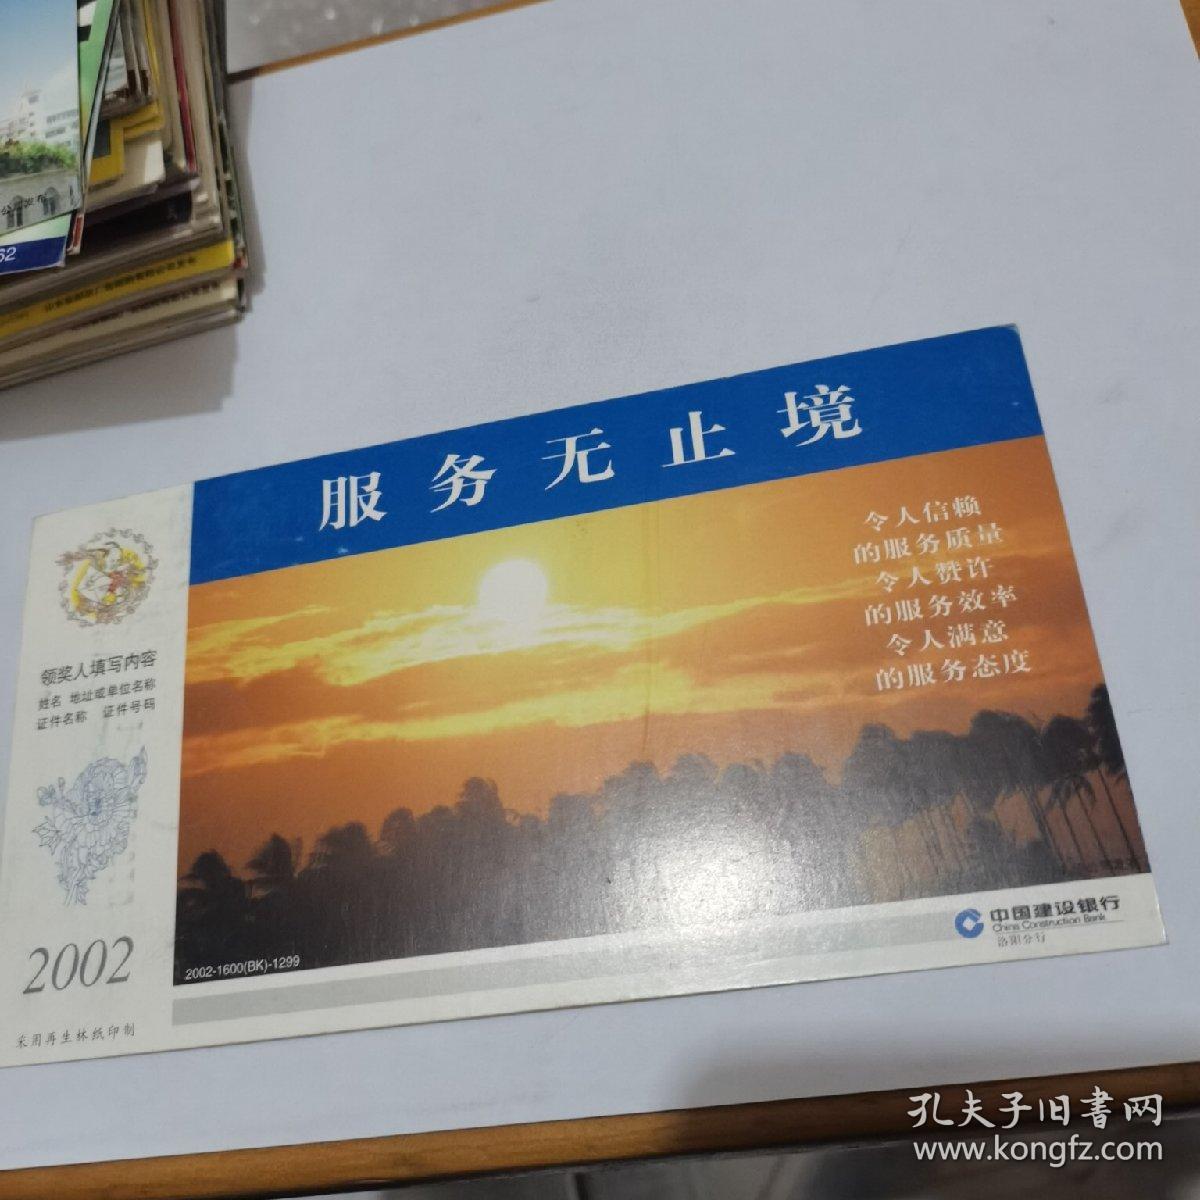 2002年中国邮政贺年（有奖）中国建设银行企业金卡实寄明信片----